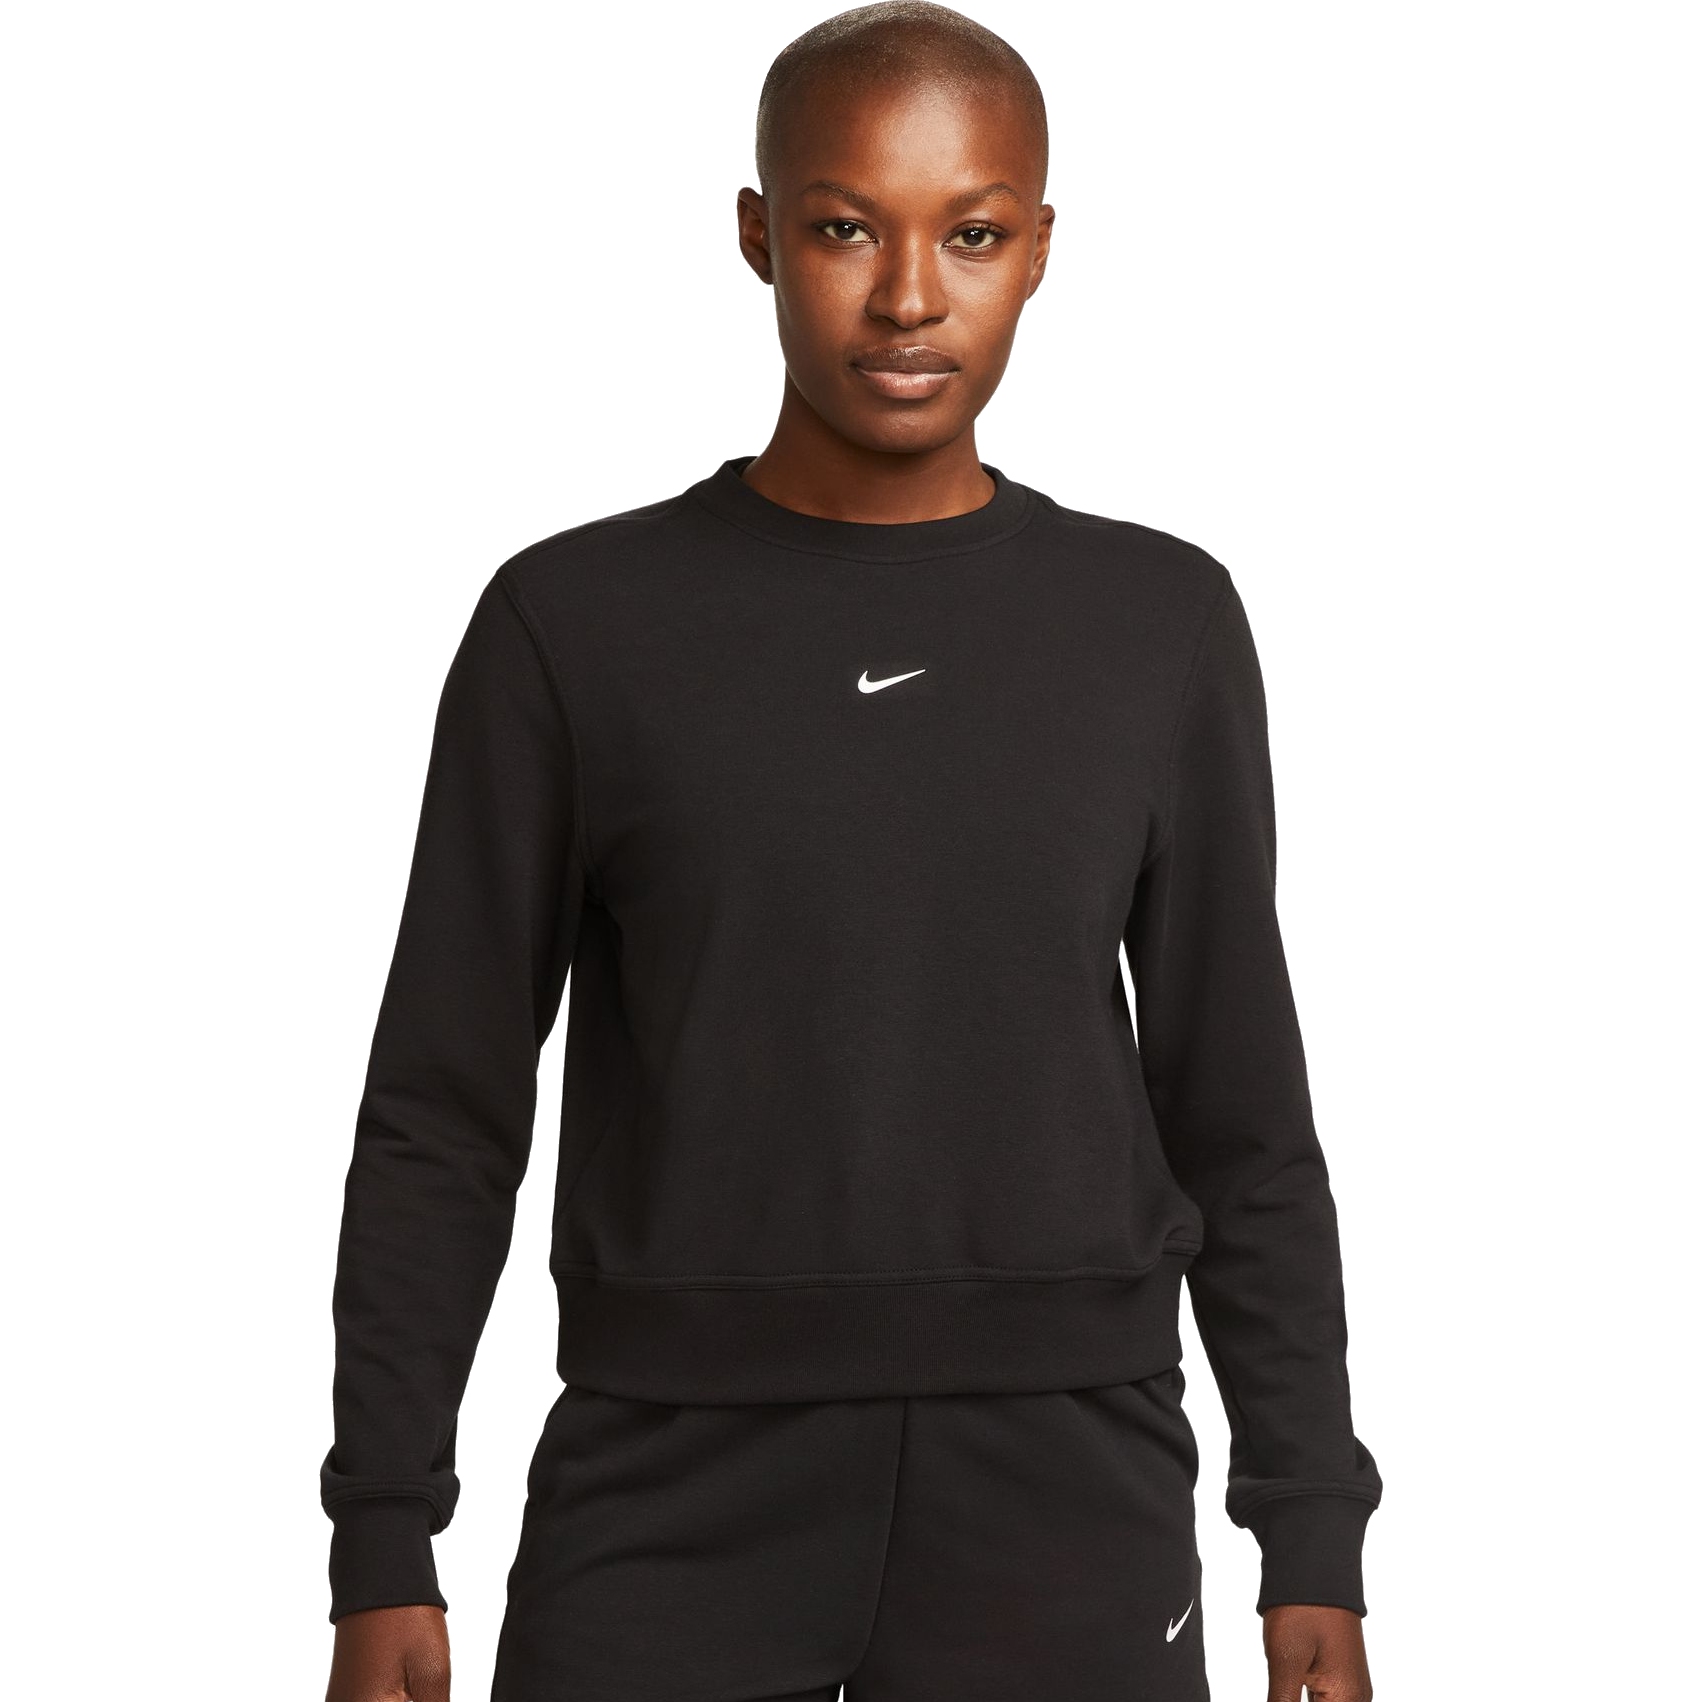 Produktbild von Nike One Dri-FIT Crew-Neck LBR Sweatshirt Damen - black/white FB5125-010